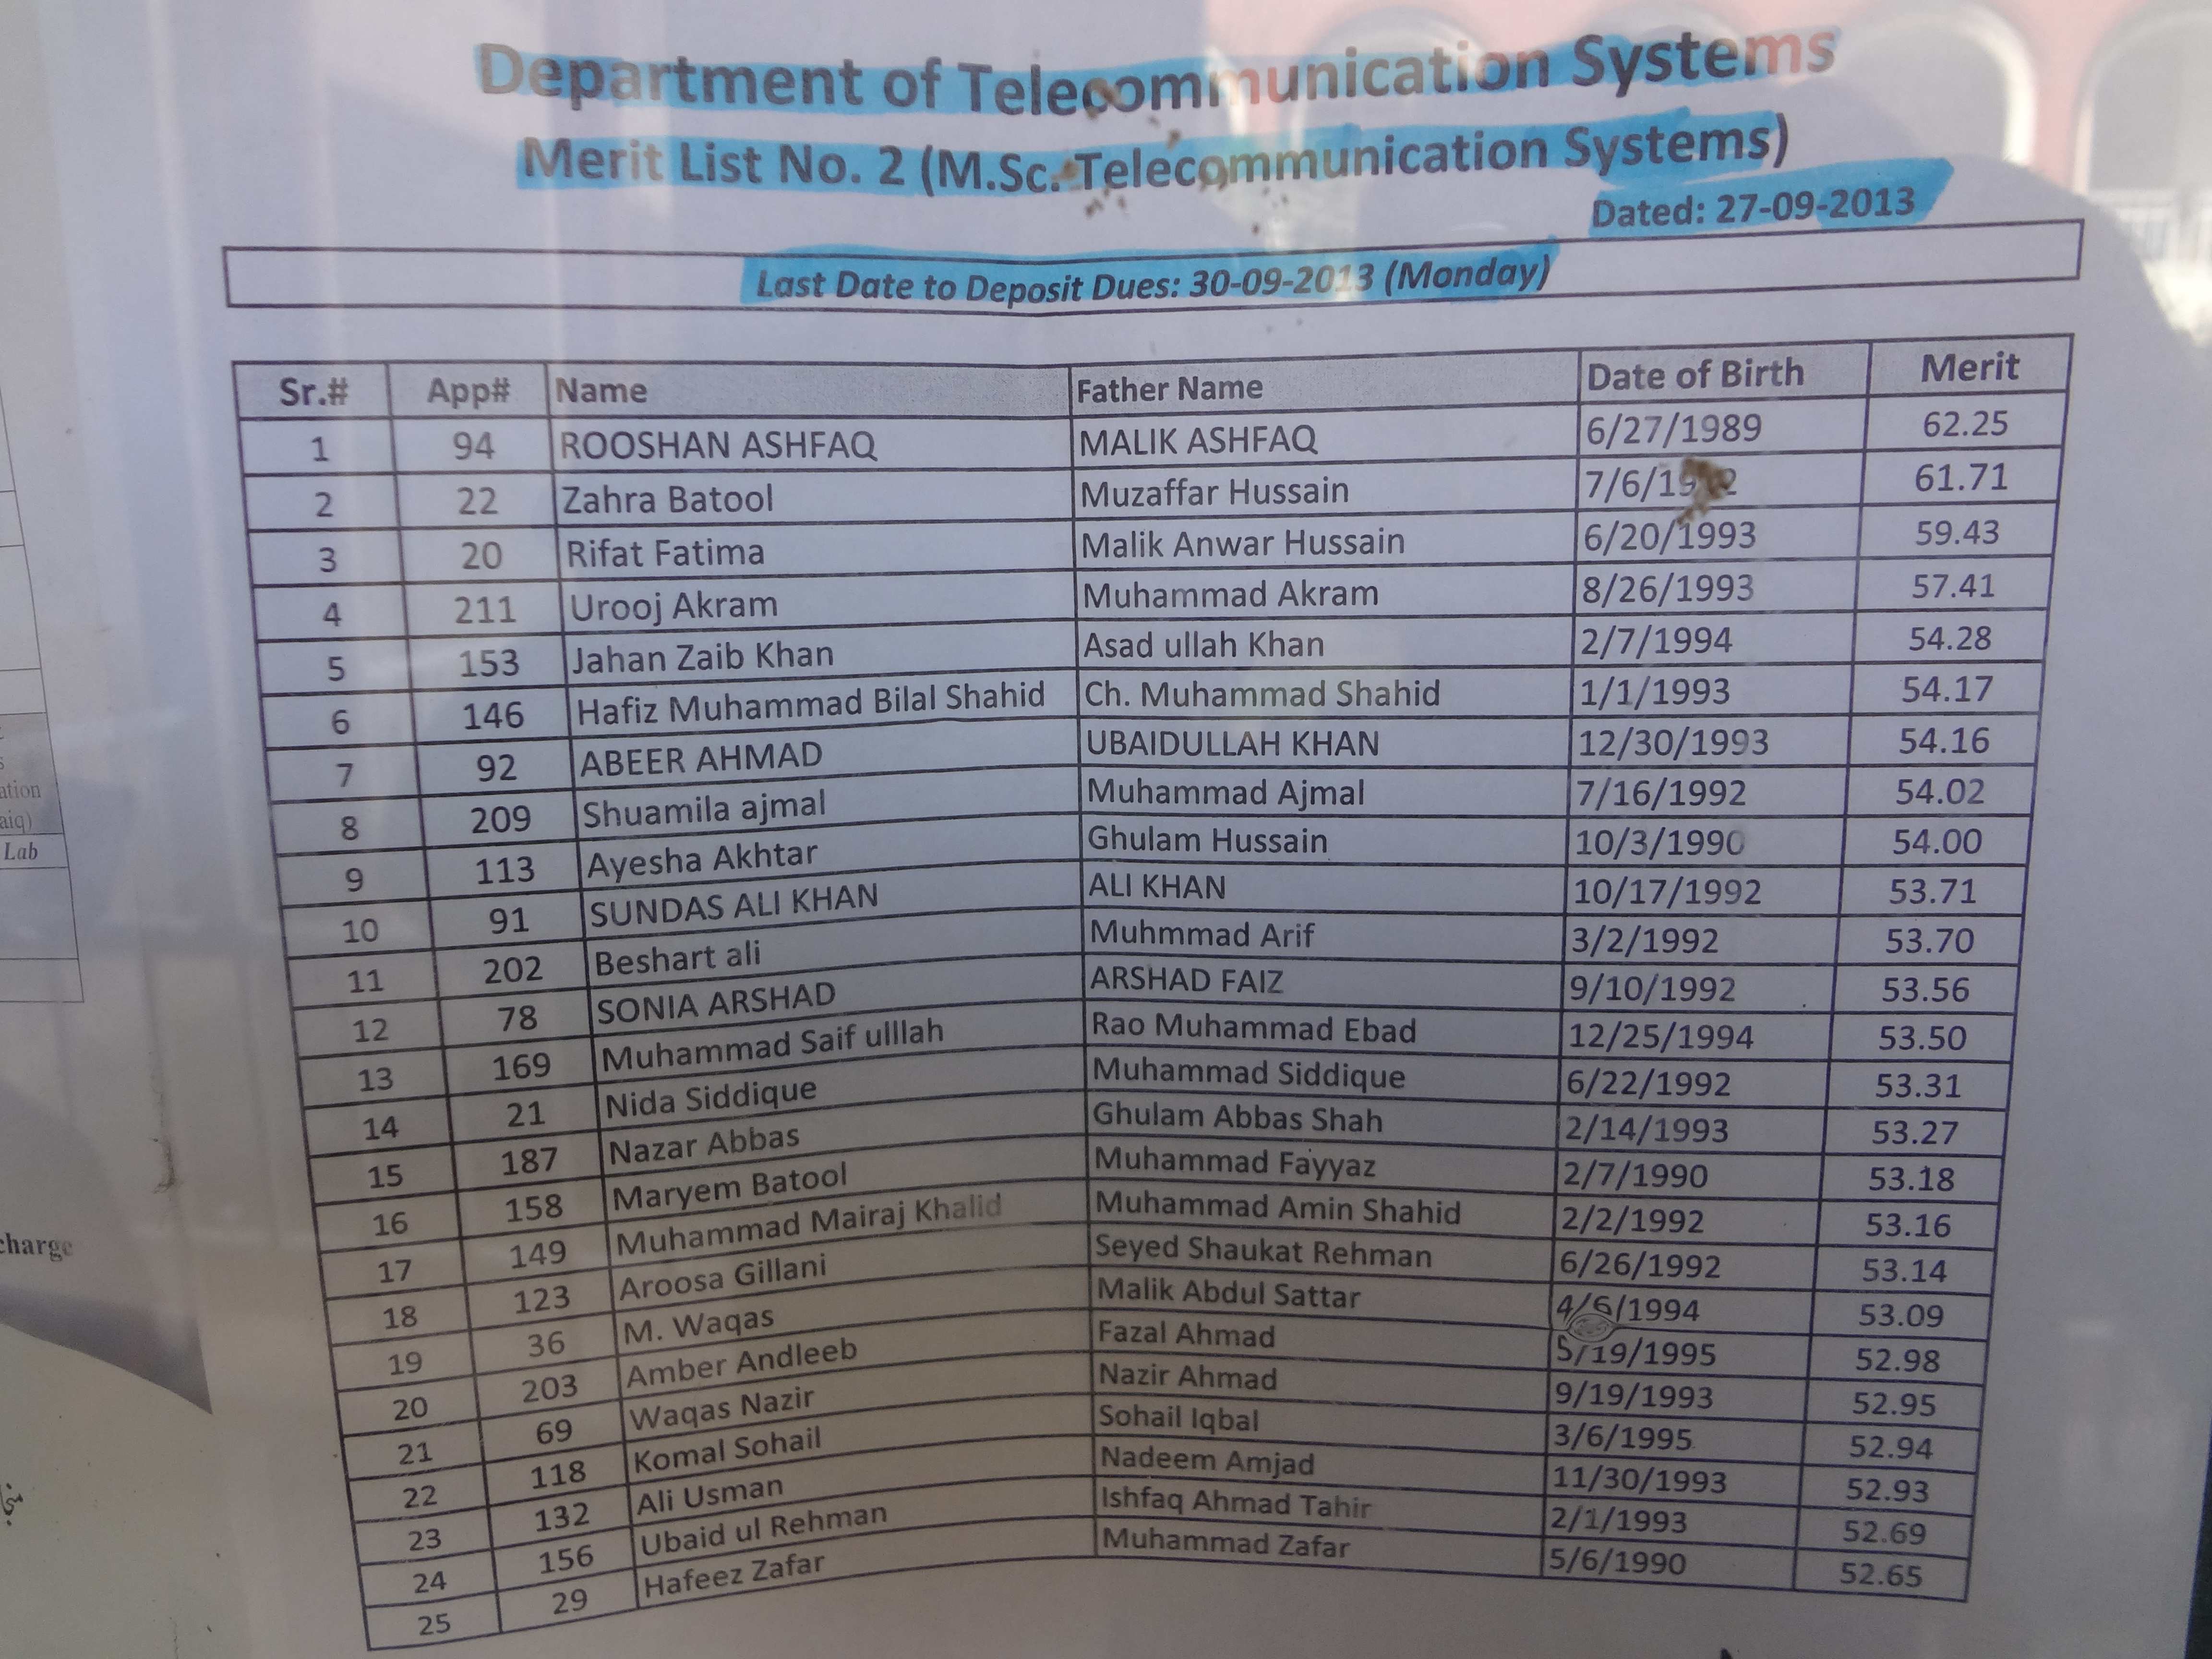 BZU second Merit List of M.Sc TS 2013